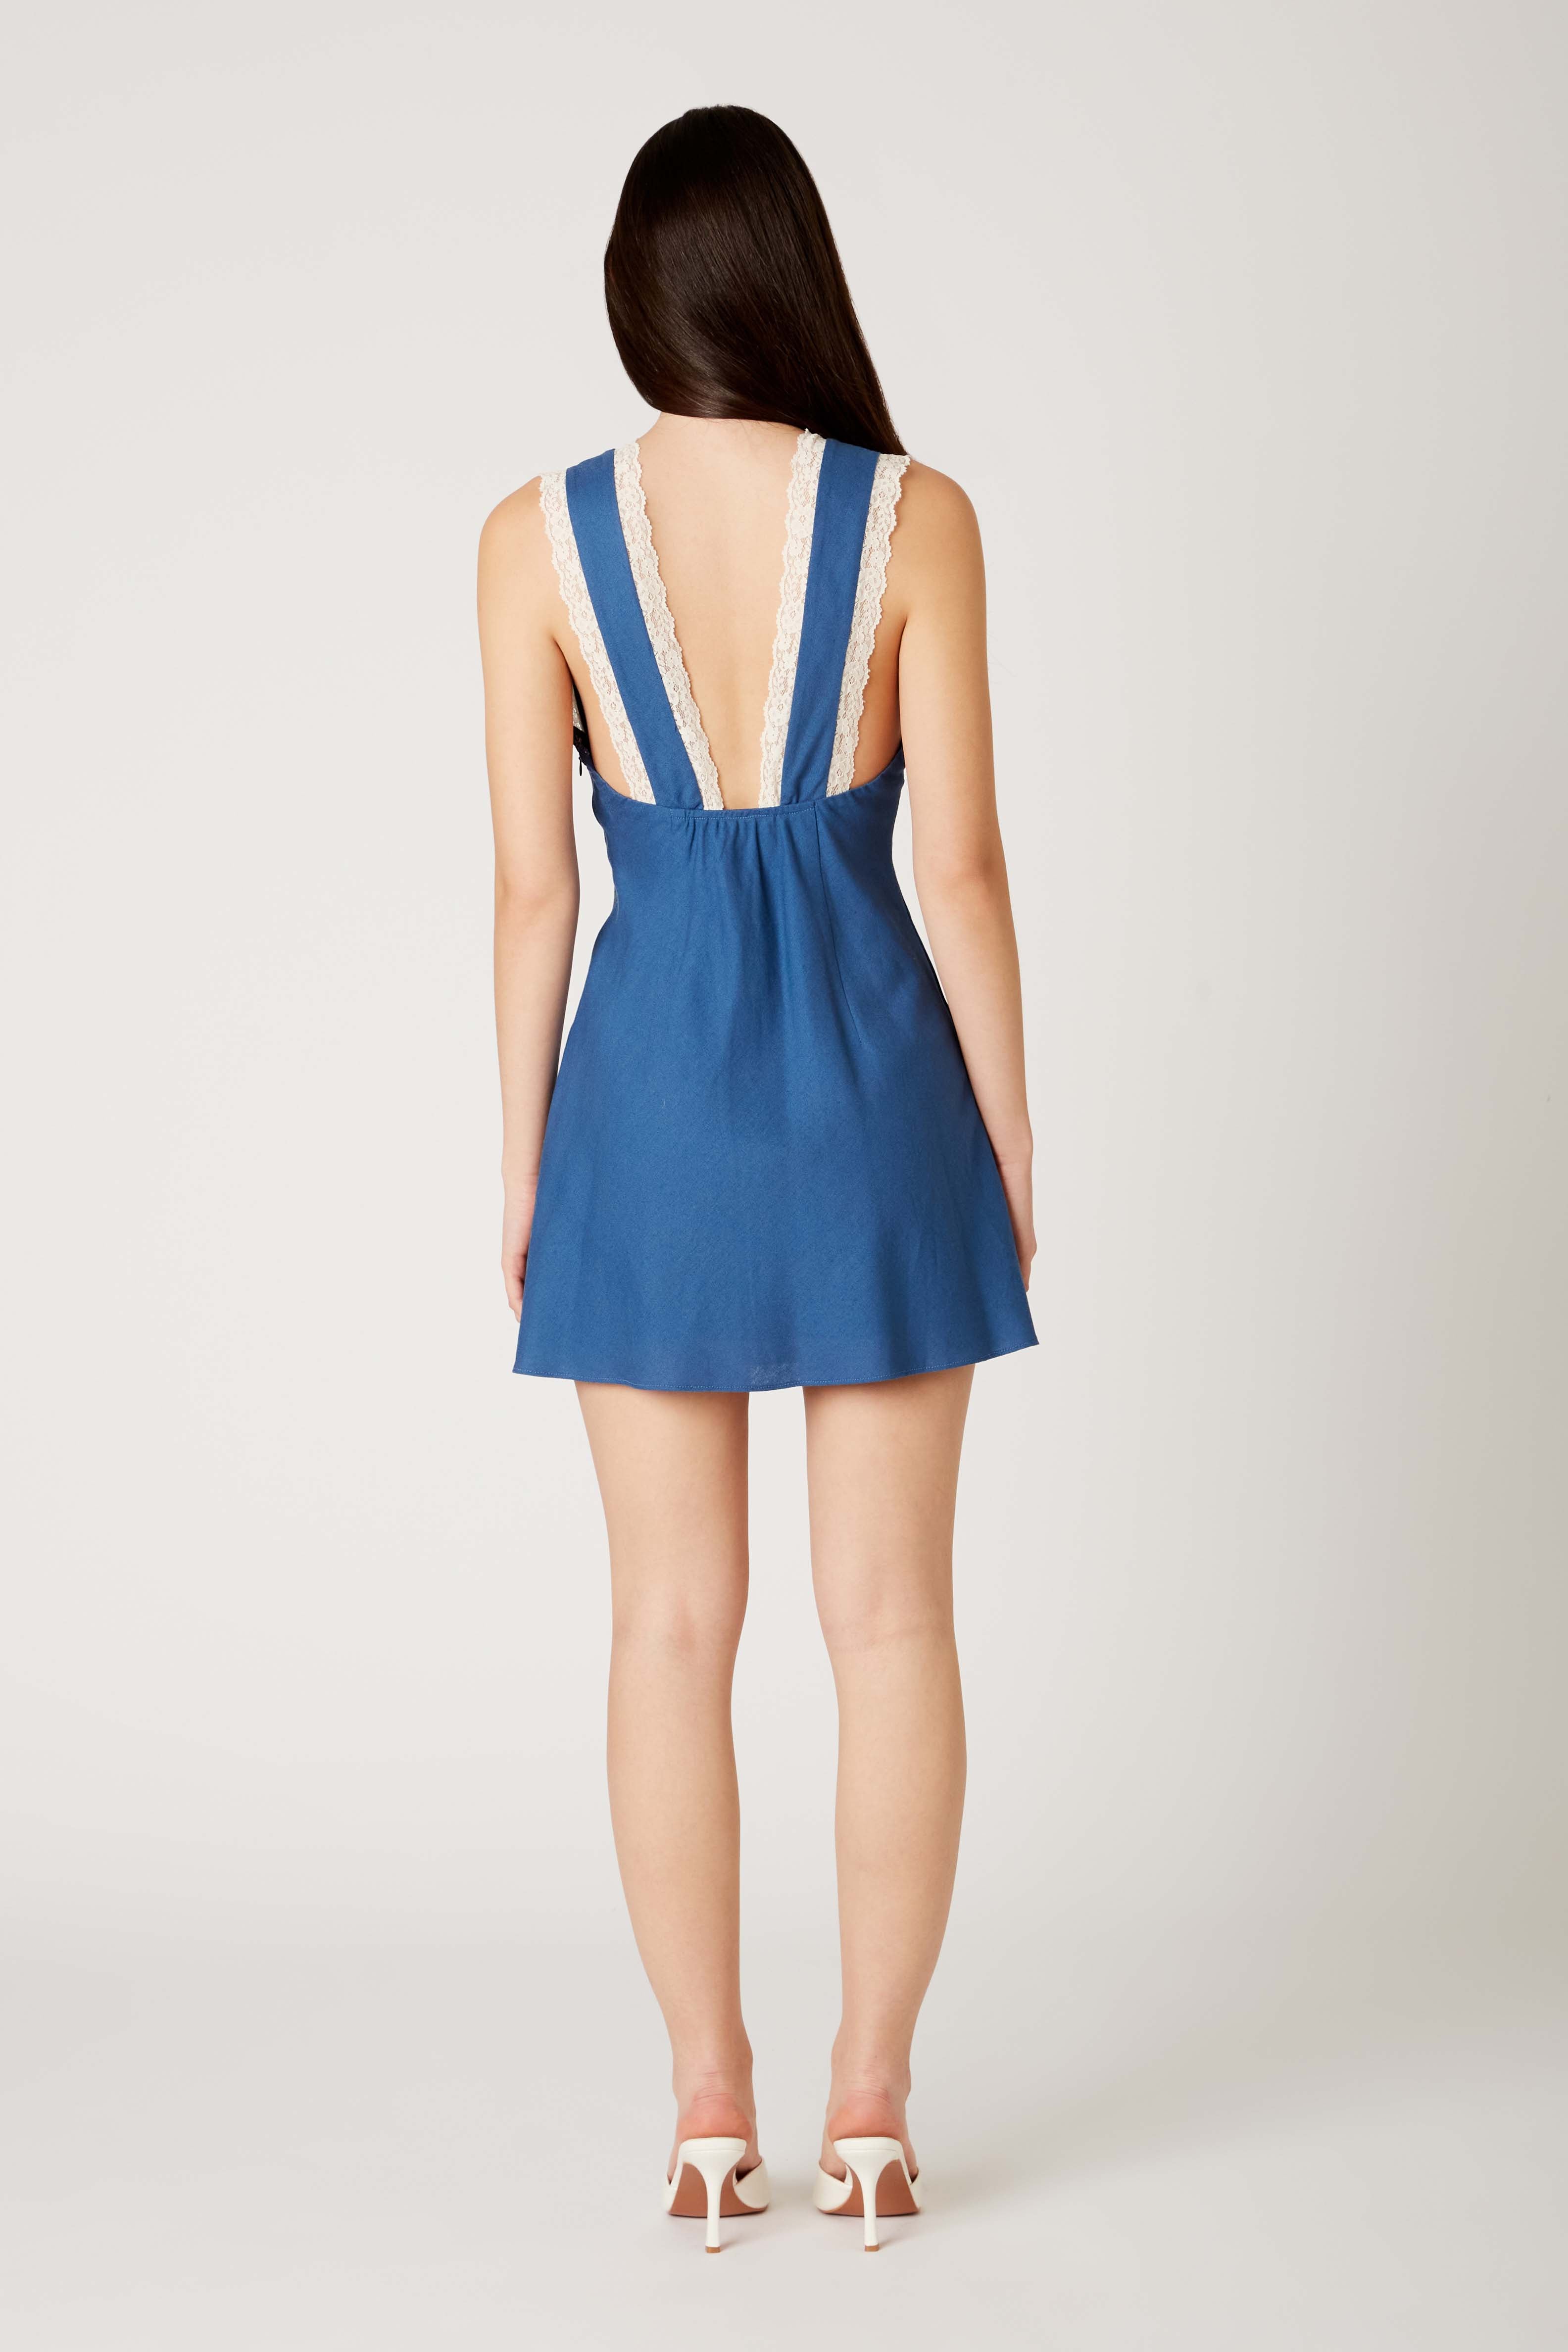 Linen Mini Dress in true blue back view